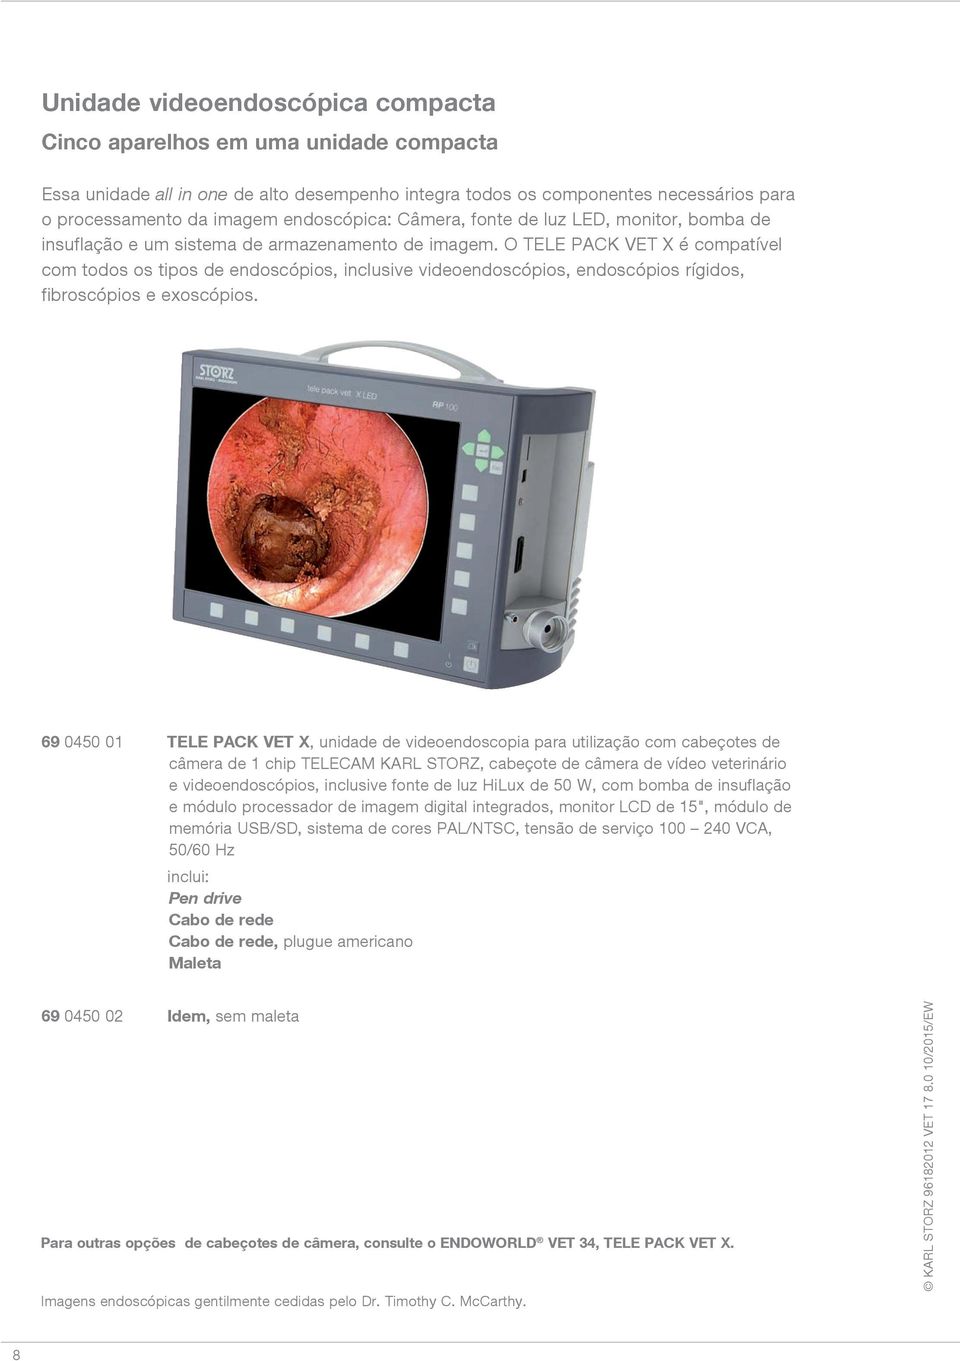 O TELE PACK VET X é compatível com todos os tipos de endoscópios, inclusive videoendoscópios, endoscópios rígidos, fibroscópios e exoscópios.